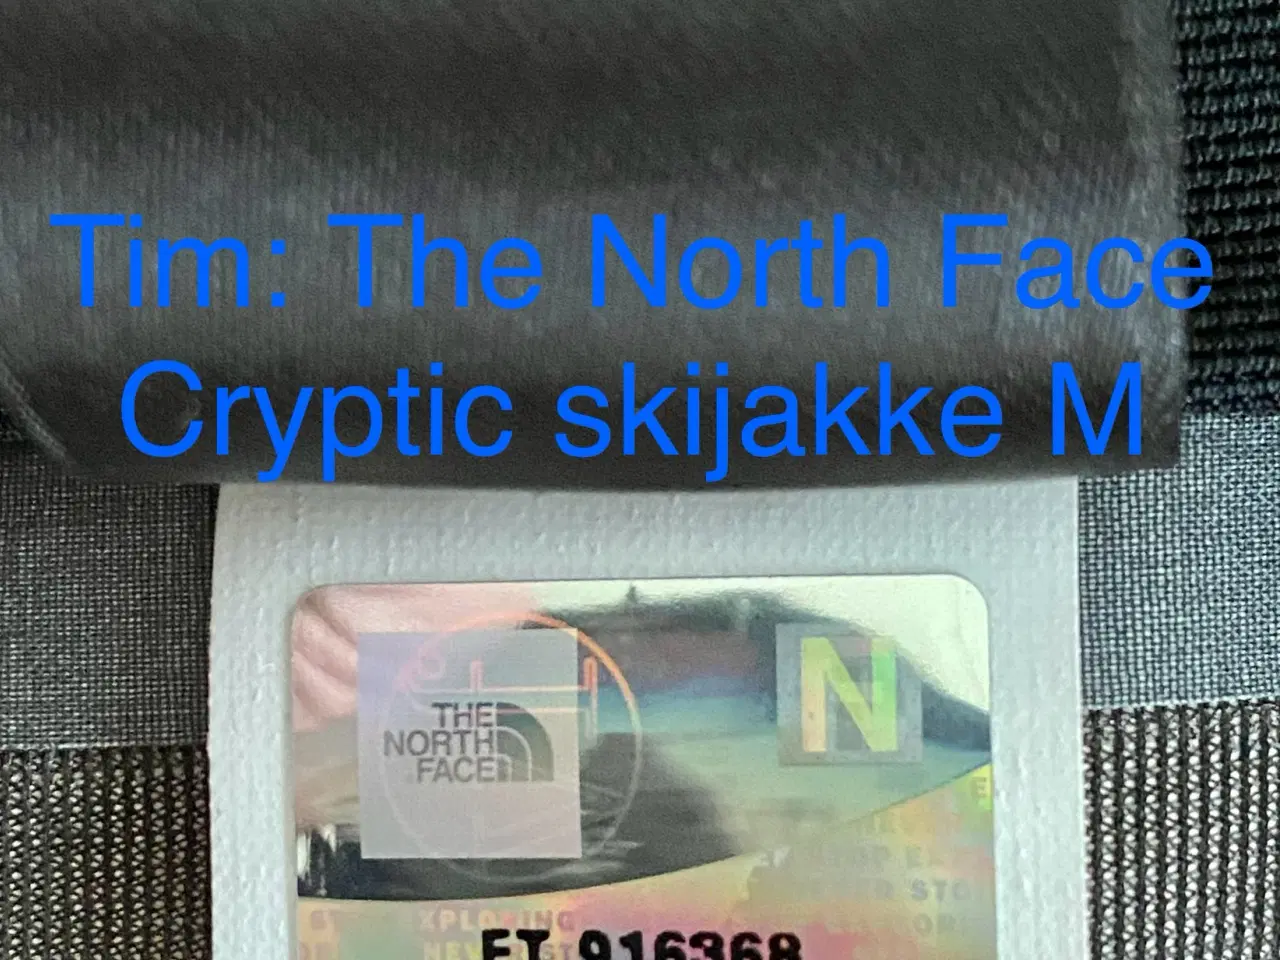 Billede 16 - The North Face Cryptic skijakke M 